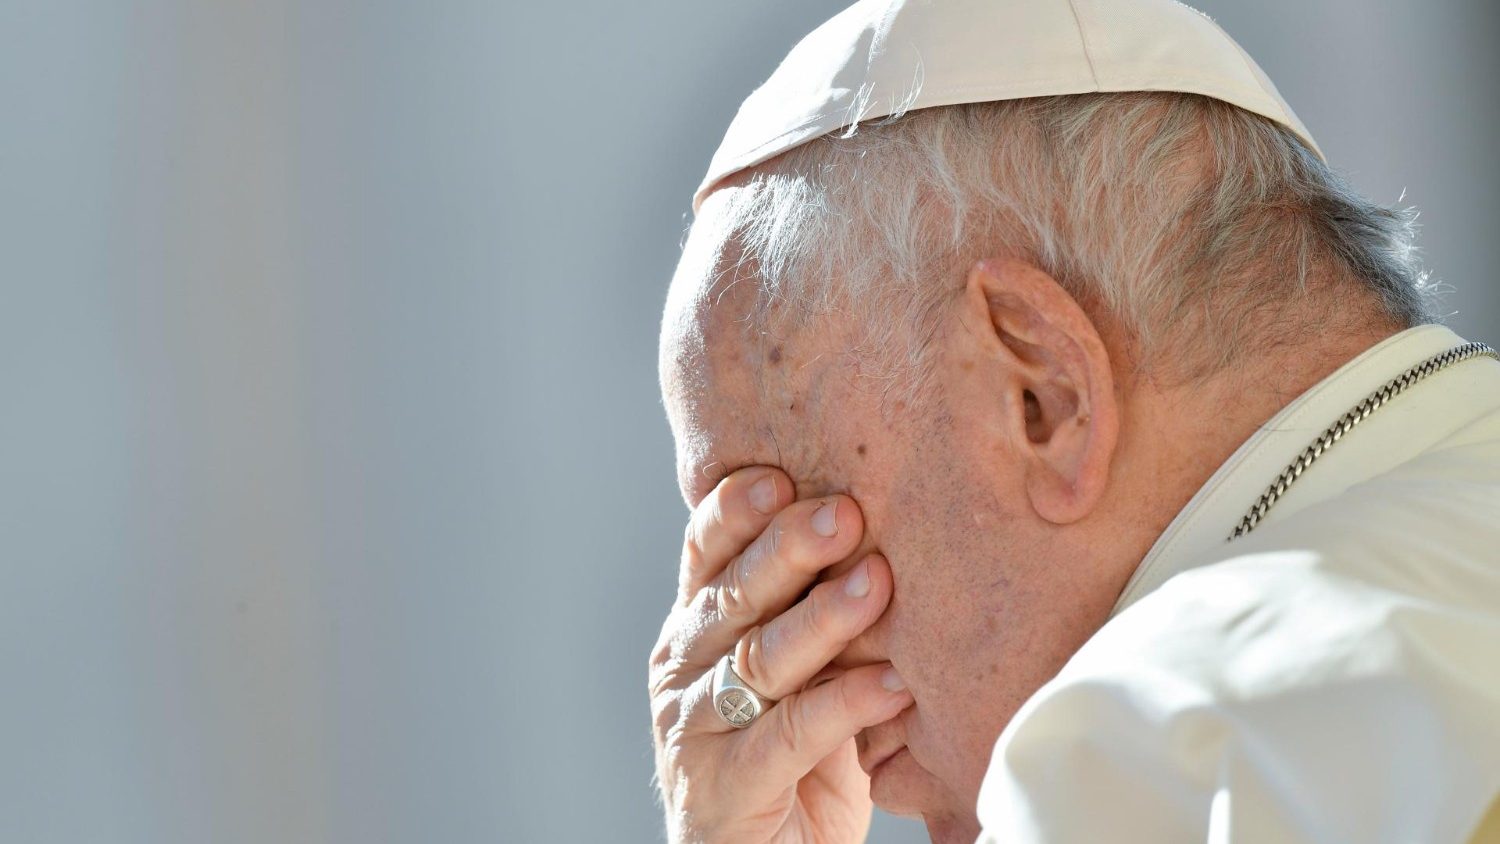 El Papa: Muchas guerras y sufrimientos, que Dios traiga una paz justa